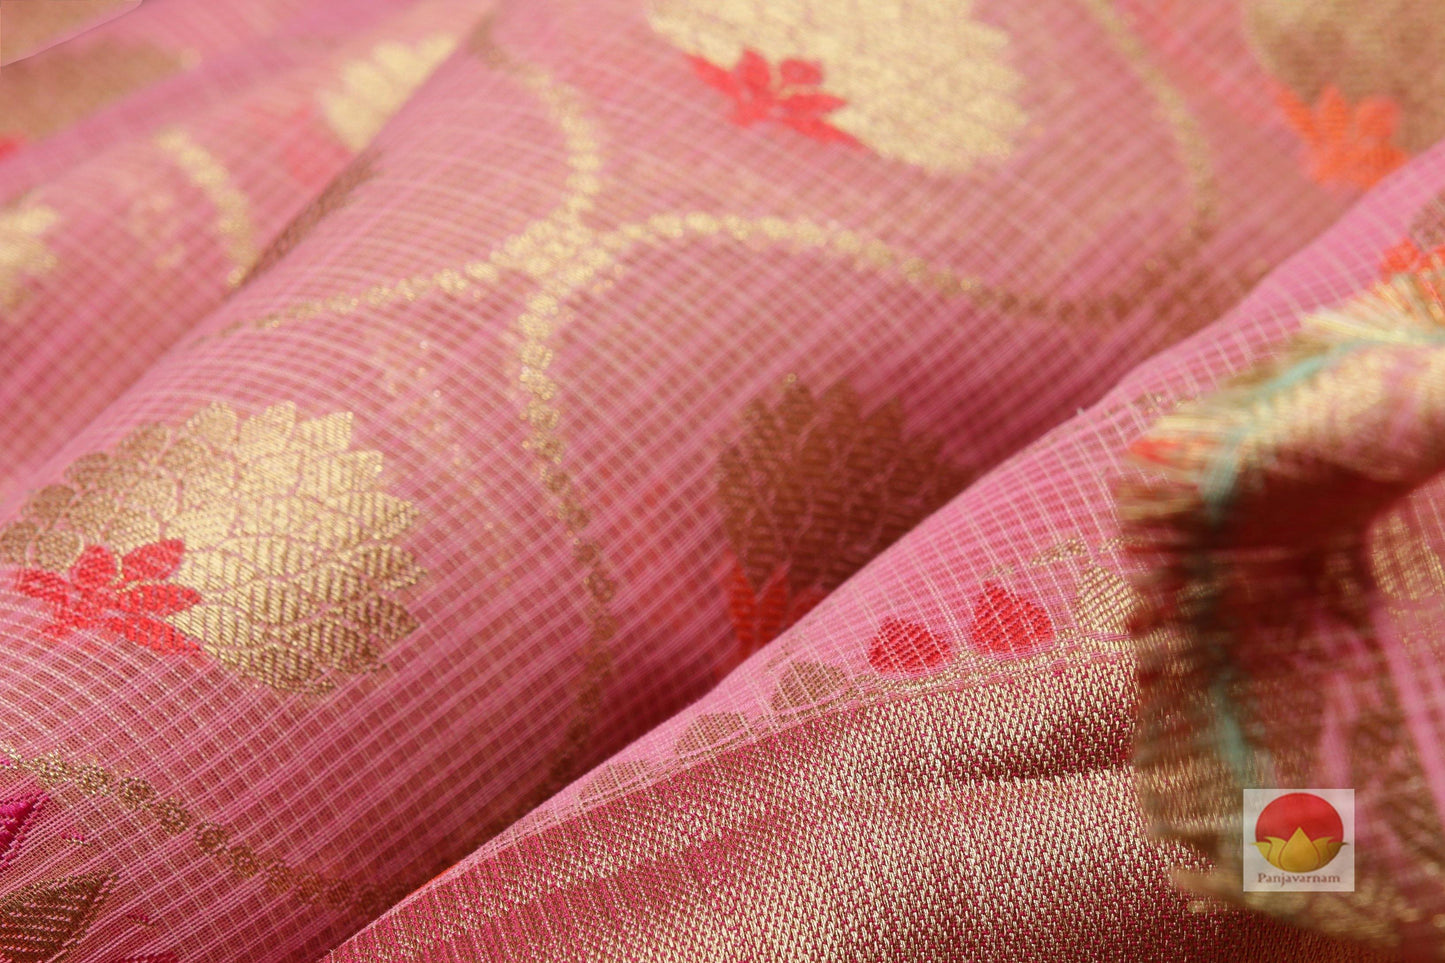 Lite Weight Banarasi Silk Cotton Saree - PSC 66 - Silk Cotton - Panjavarnam